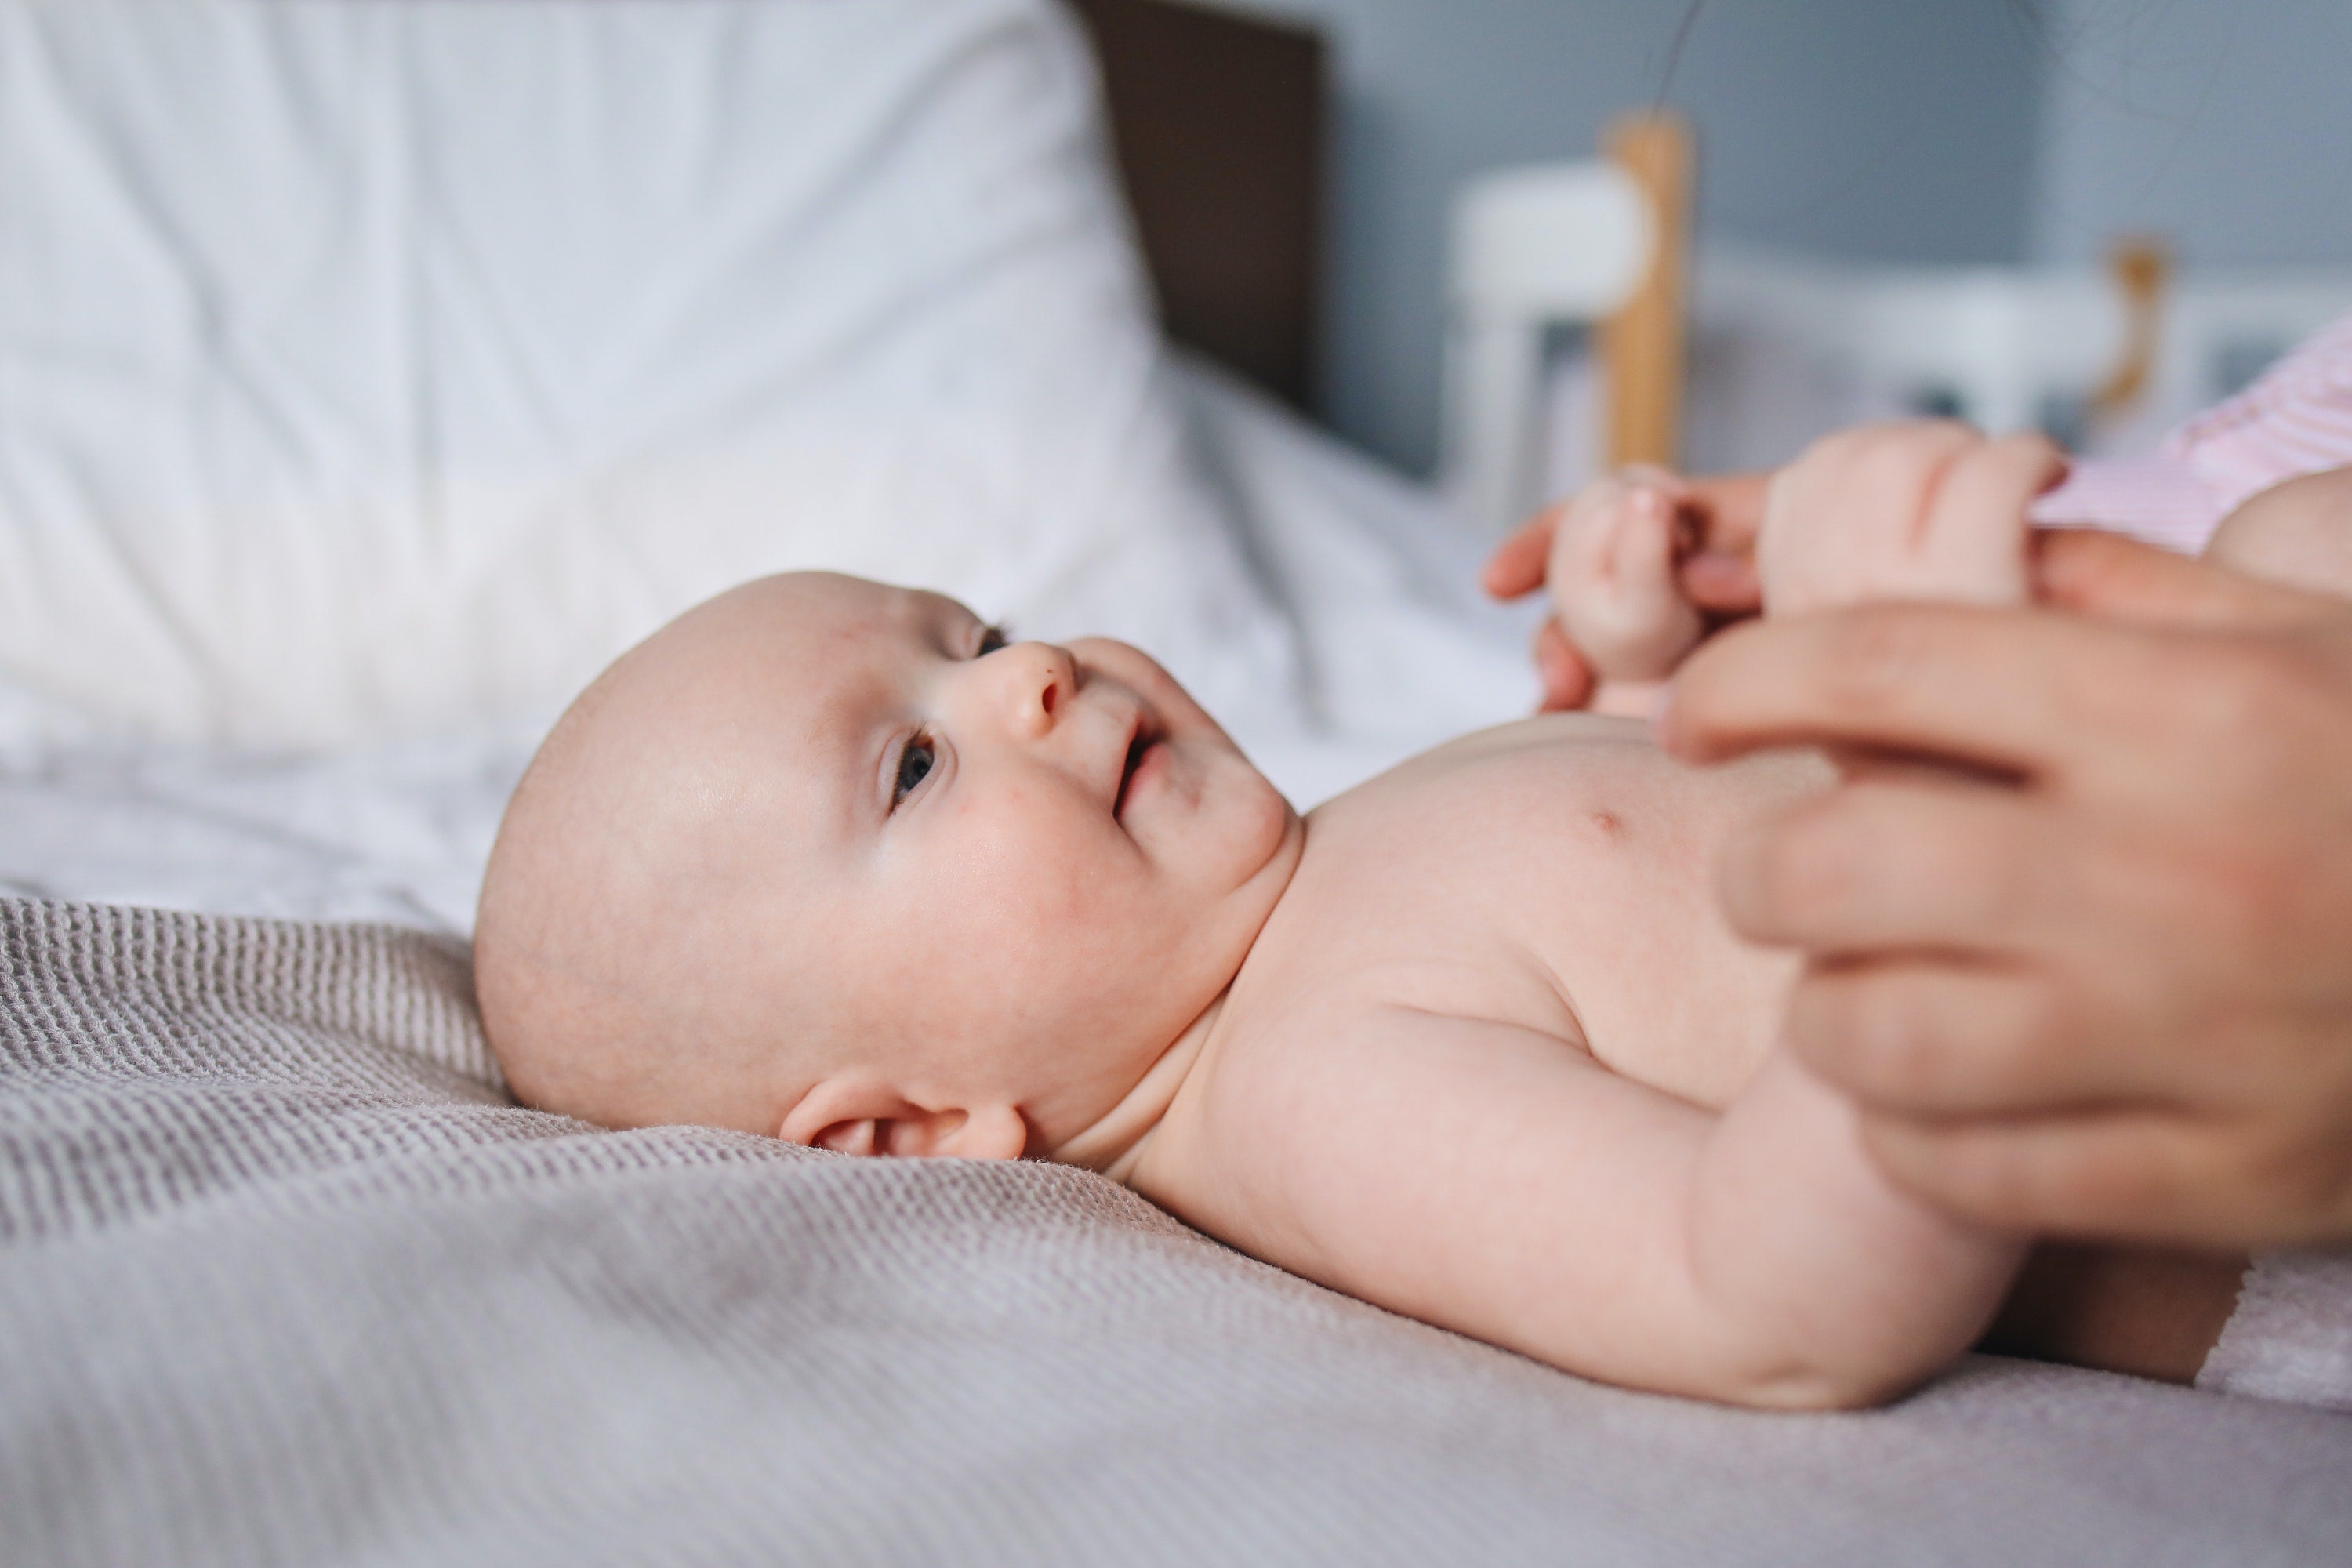 Changer la couche de bébé : quand, combien de fois par jour ?